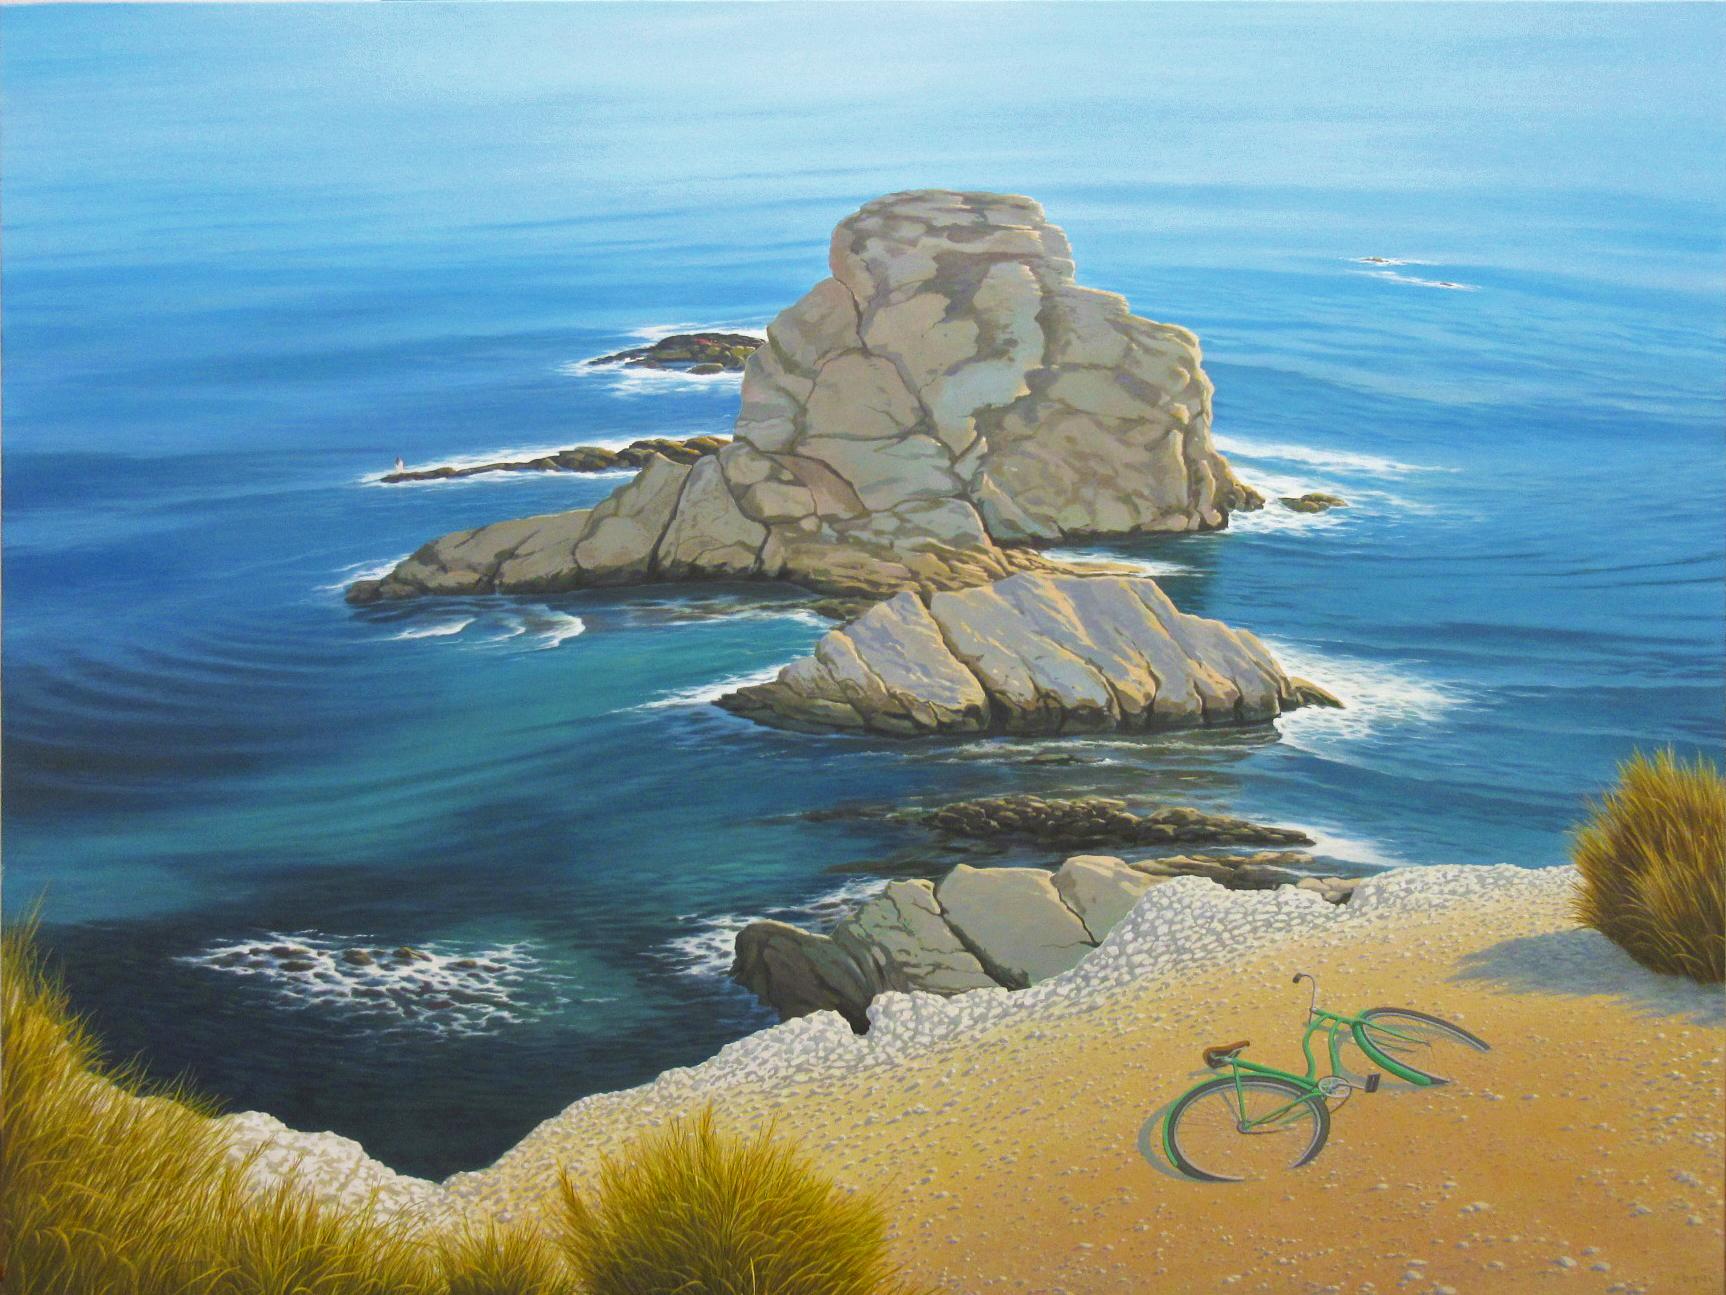 René Monzón Relova “Pozas” Figurative Painting – In Erinnerung an die Cliffside-Szene in warmem, hellem und blauem türkisfarbenem Wasser getaucht